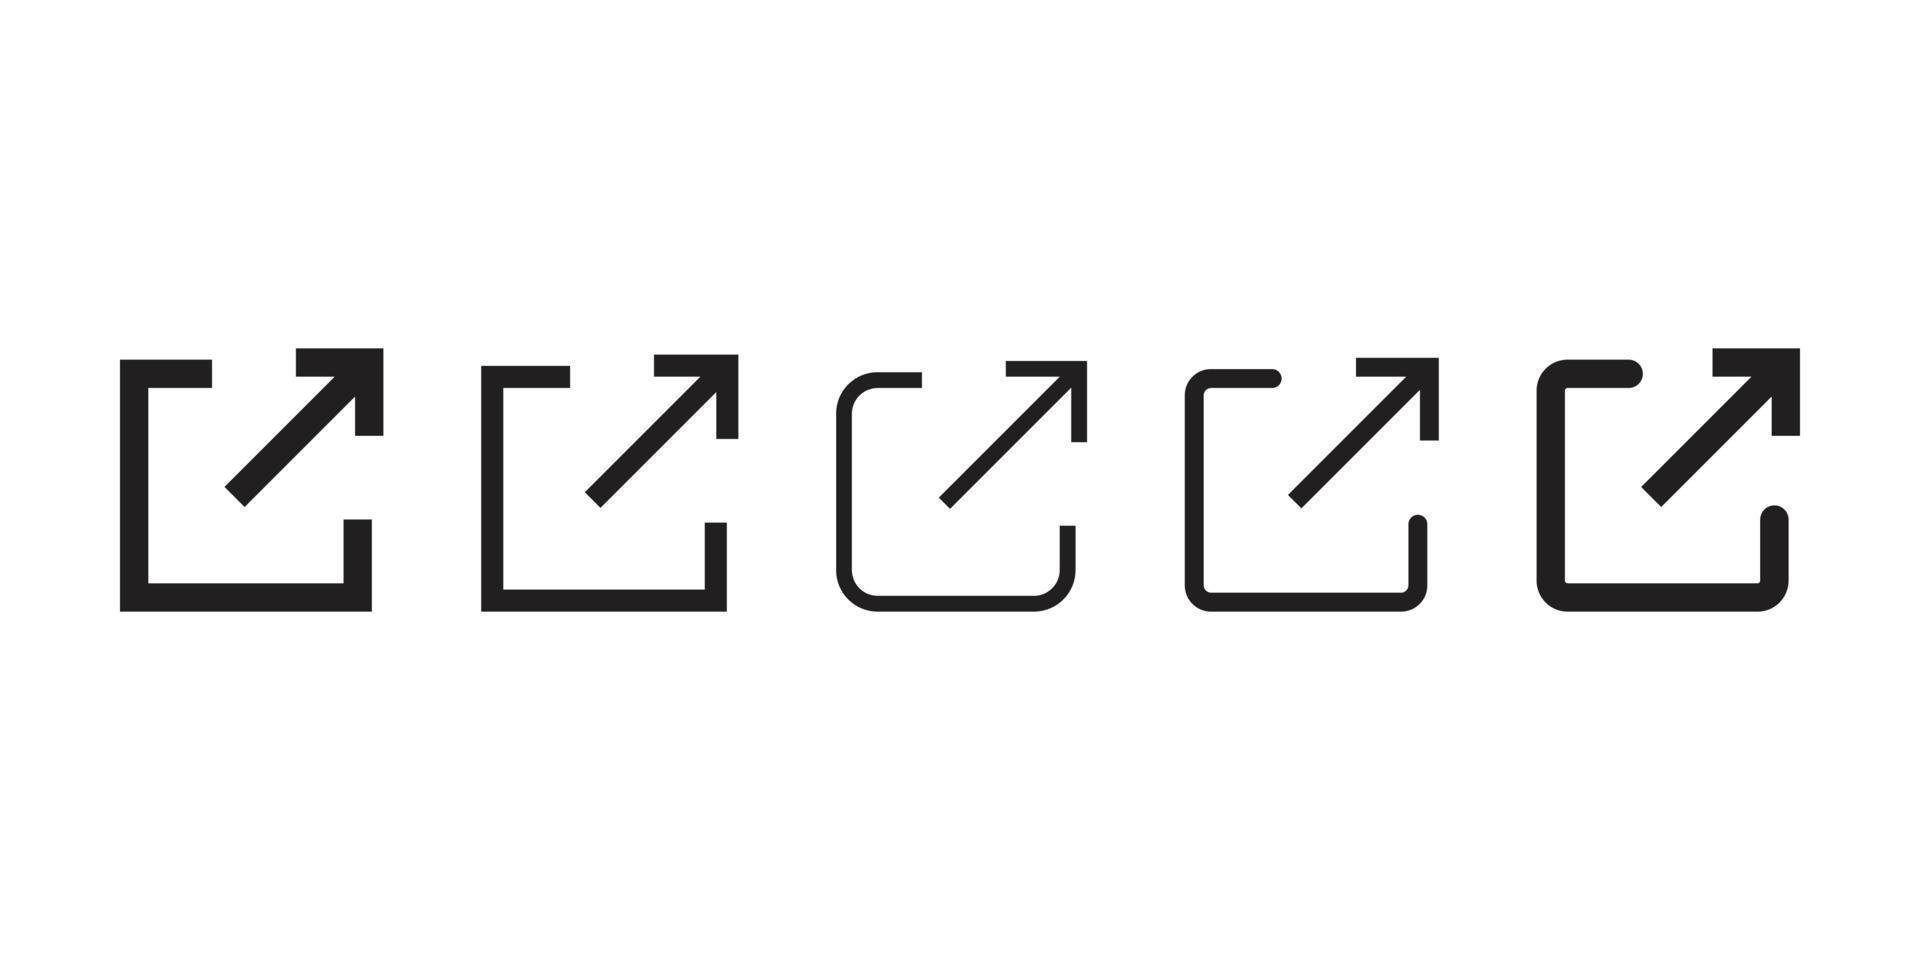 linea del vettore icona collegamento esterno su sfondo bianco immagine per web, presentazione, logo, icona simbolo